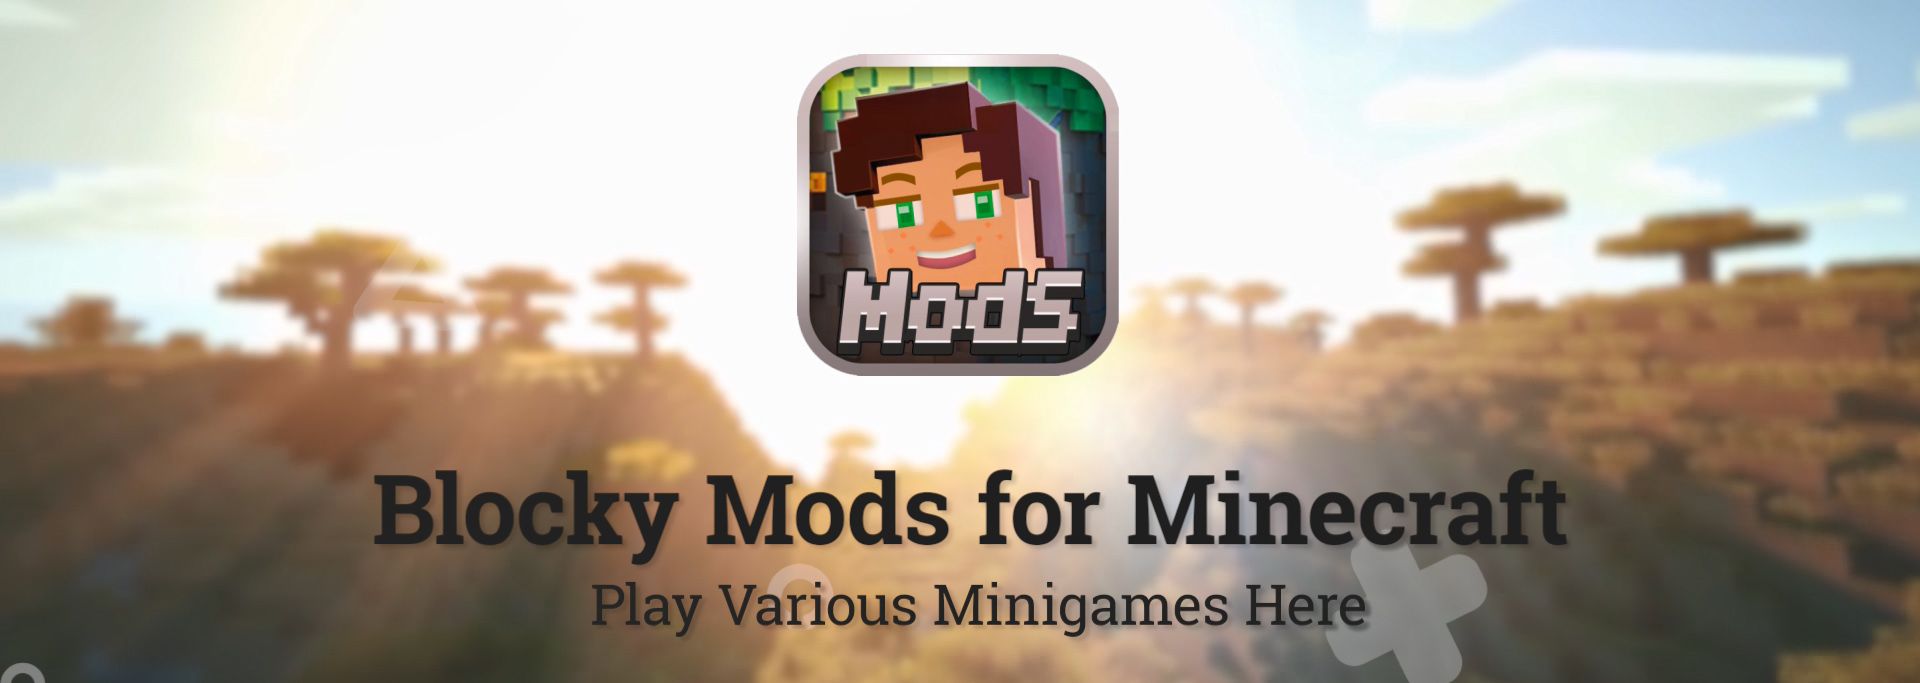 商业作品 Blocky Mods For Minecraft 我的世界小游戏对战平台 Fall企画